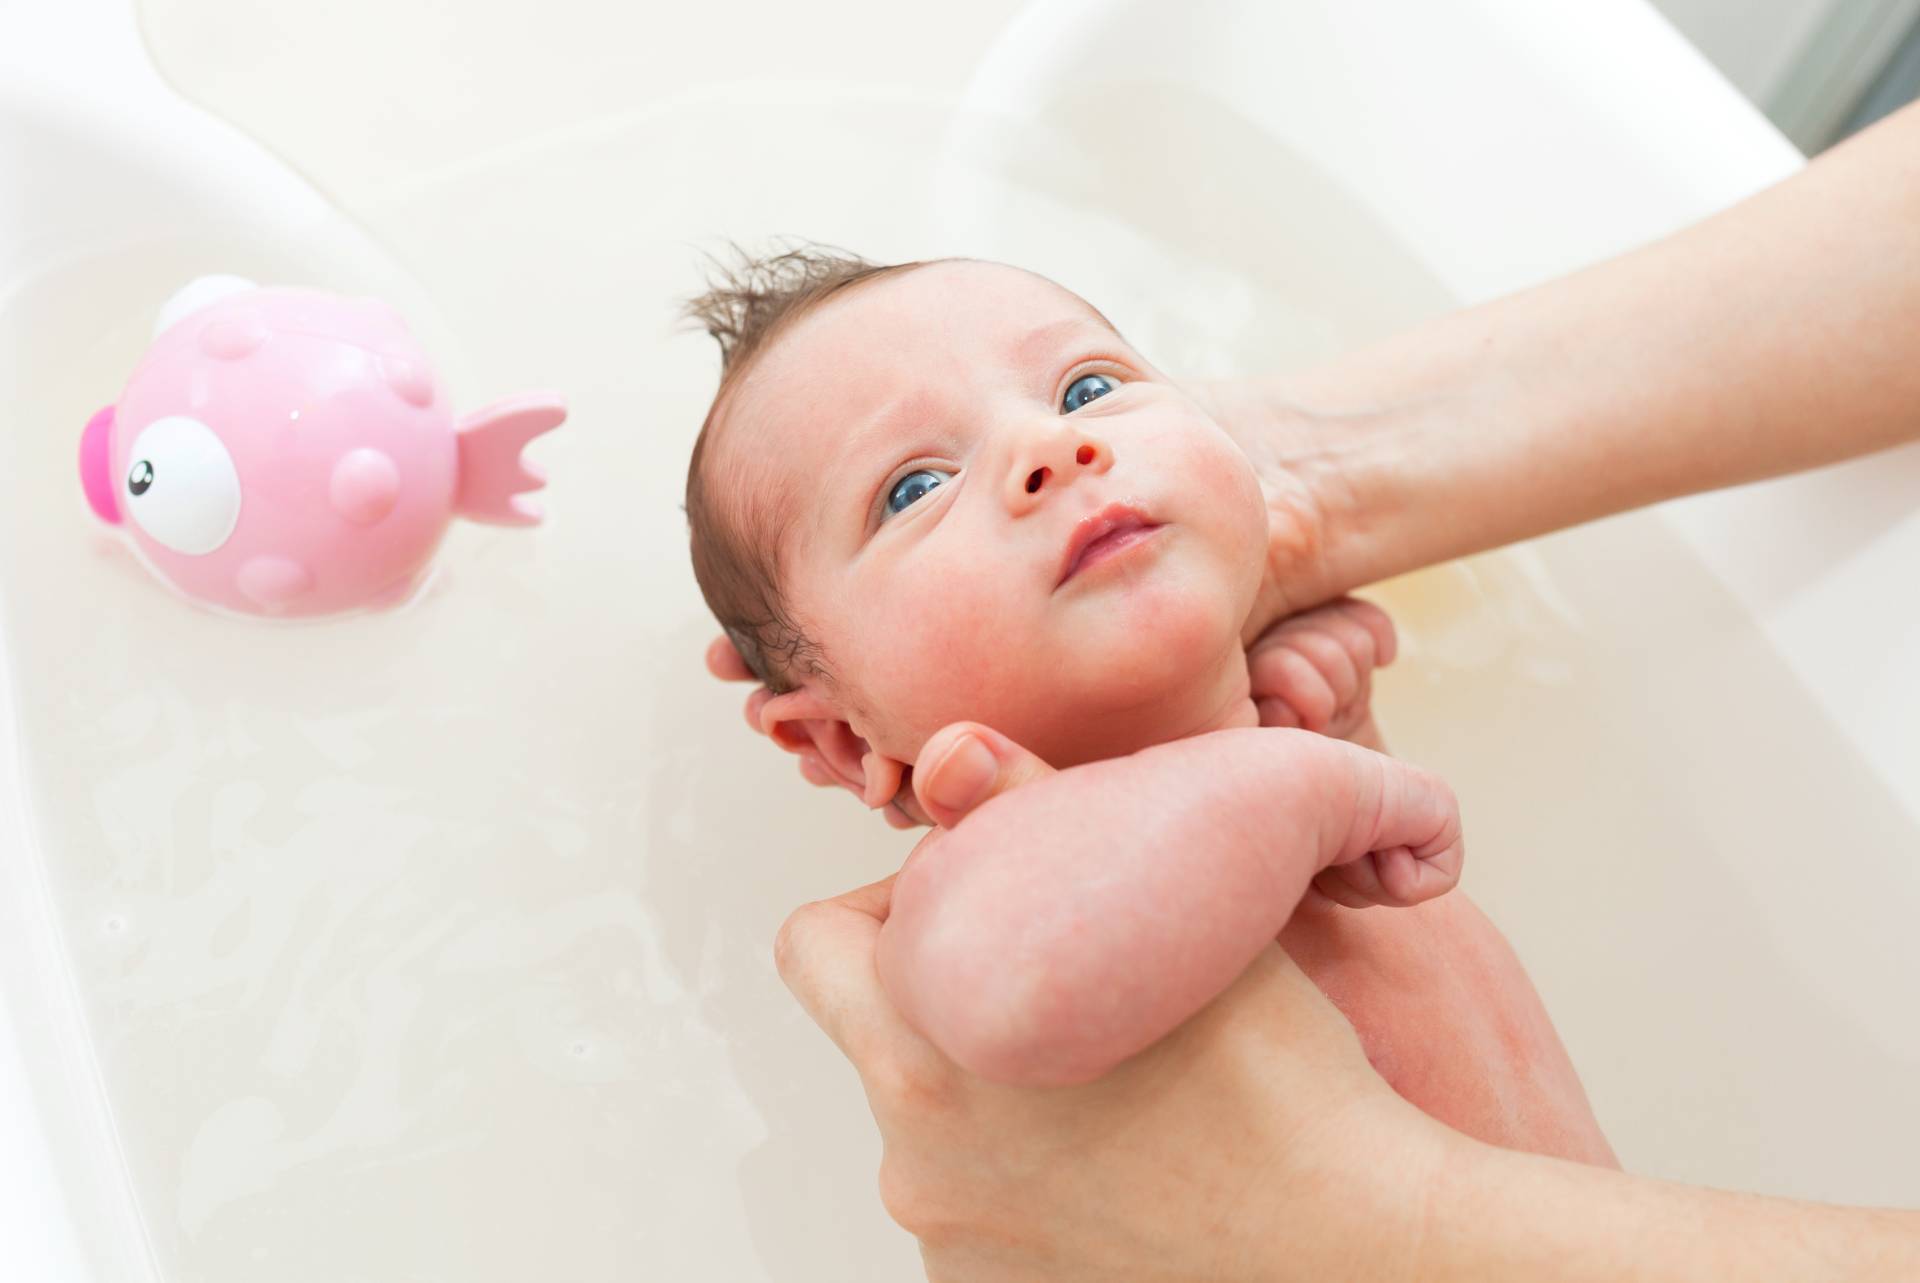 O której godzinie najlepiej kąpać niemowlę? Pora ma znaczenie